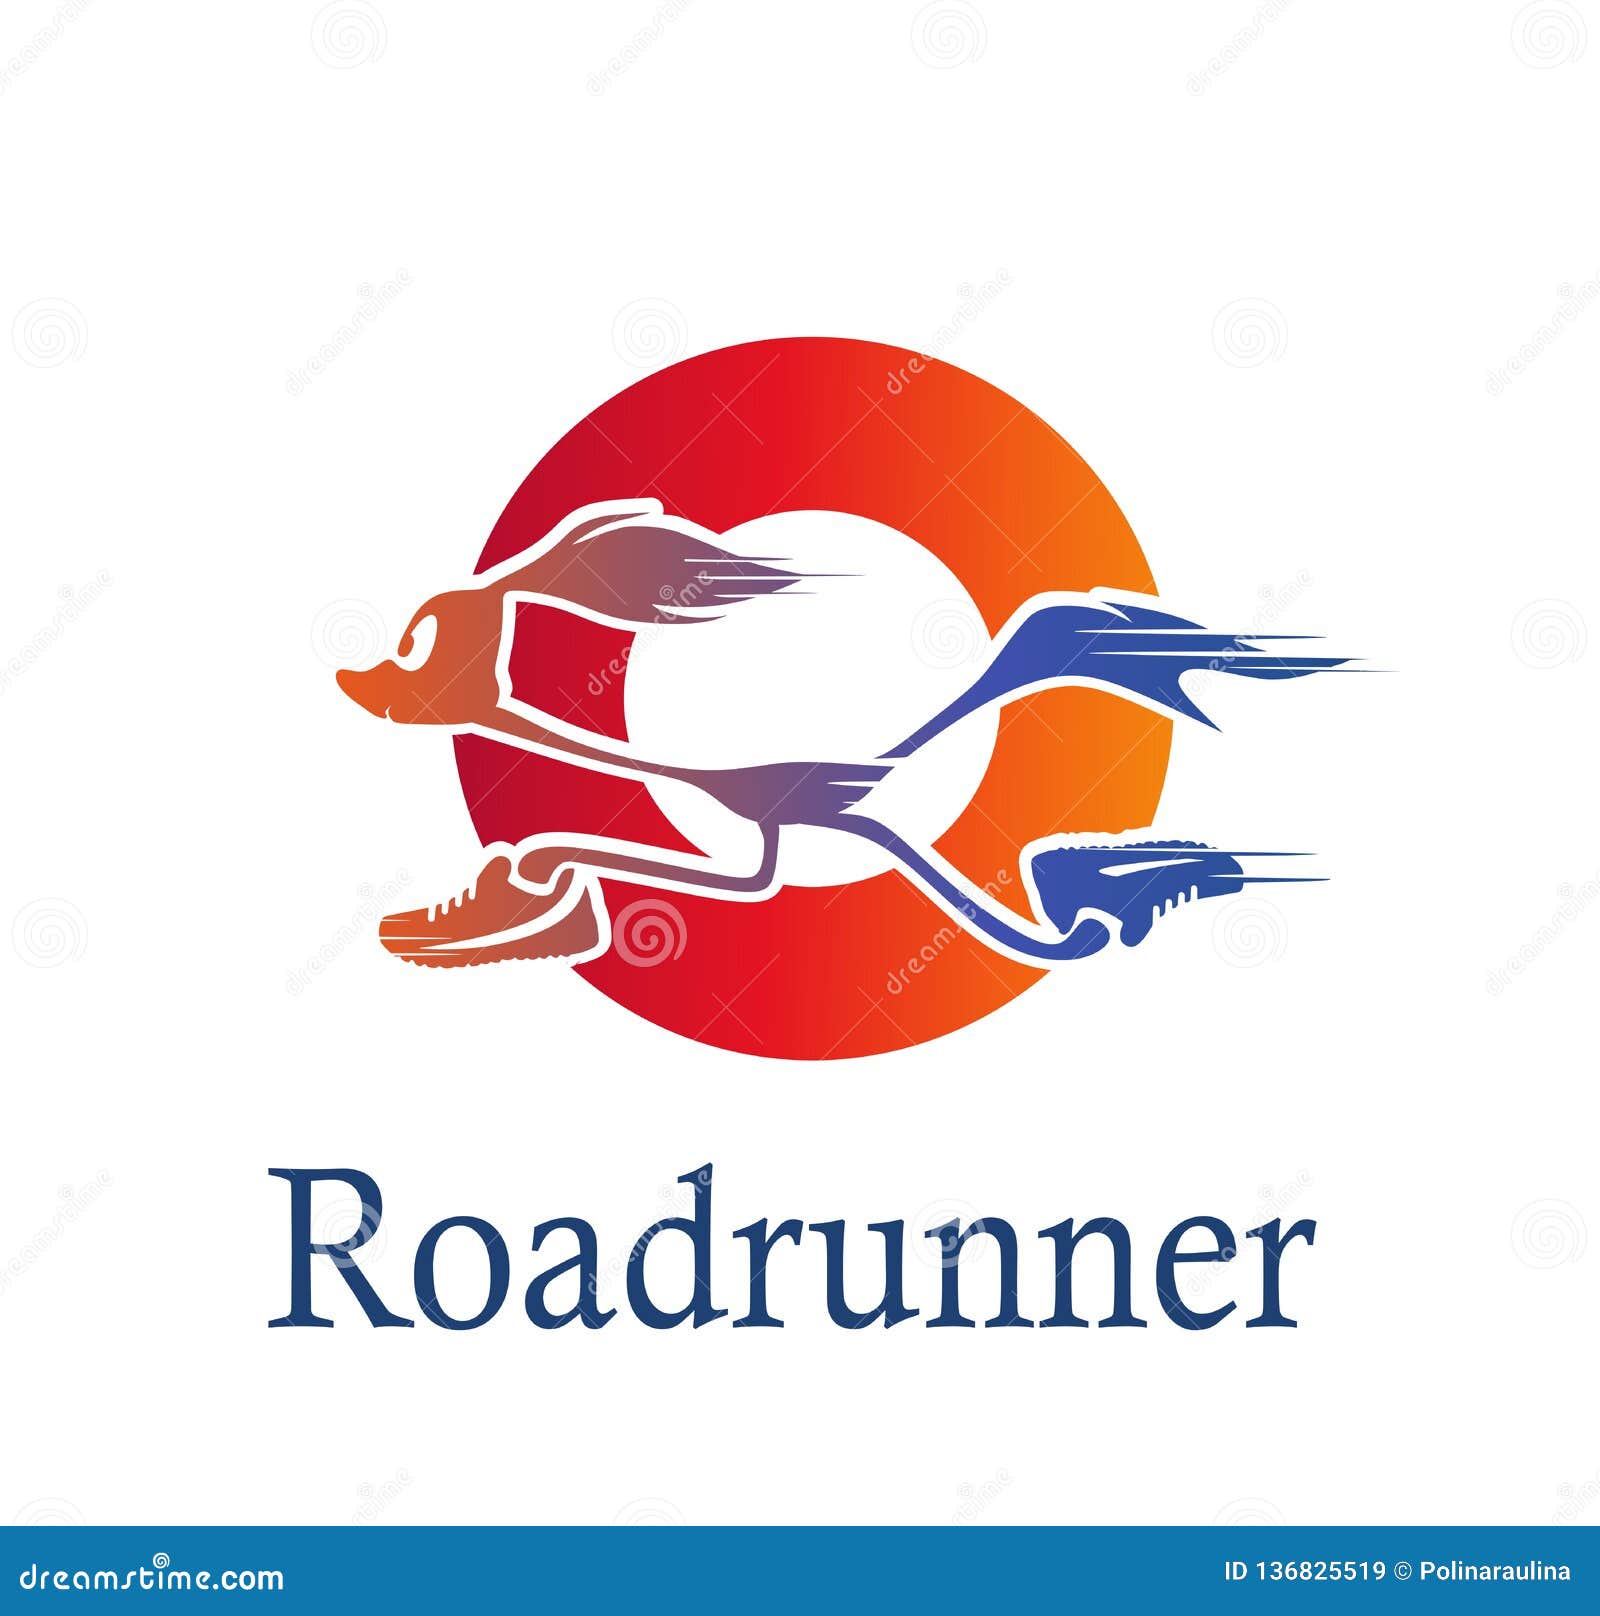 roadrunner logo in red circle. bird logo.